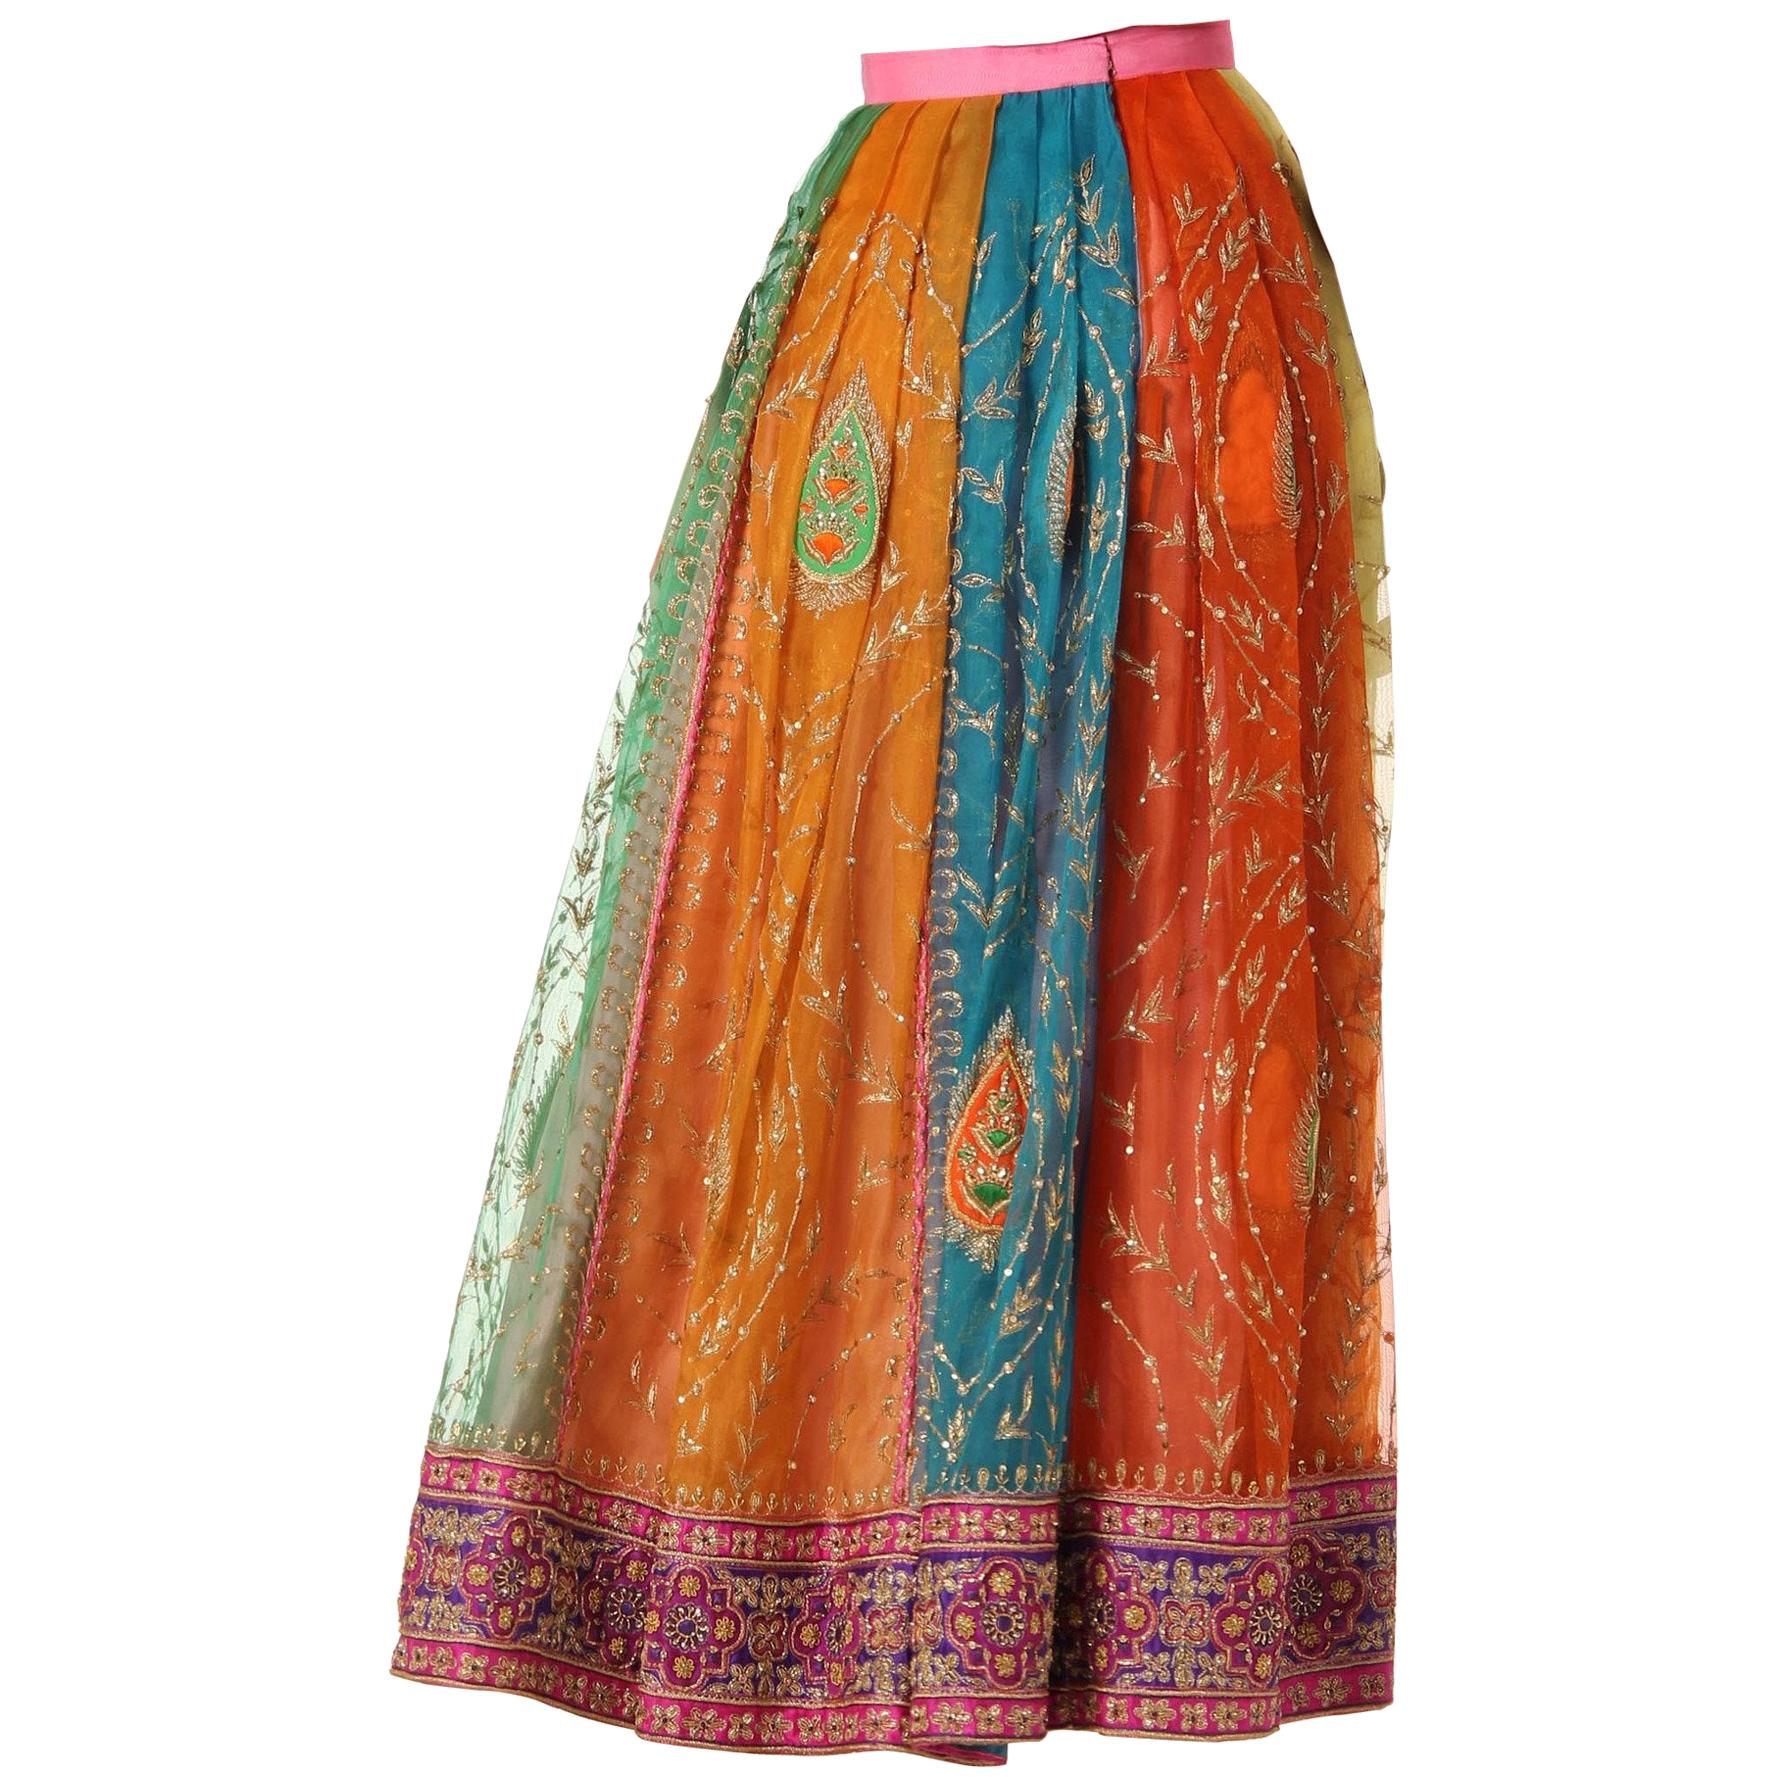 Paisley Skirts - 22 For Sale on 1stDibs | long paisley skirt 